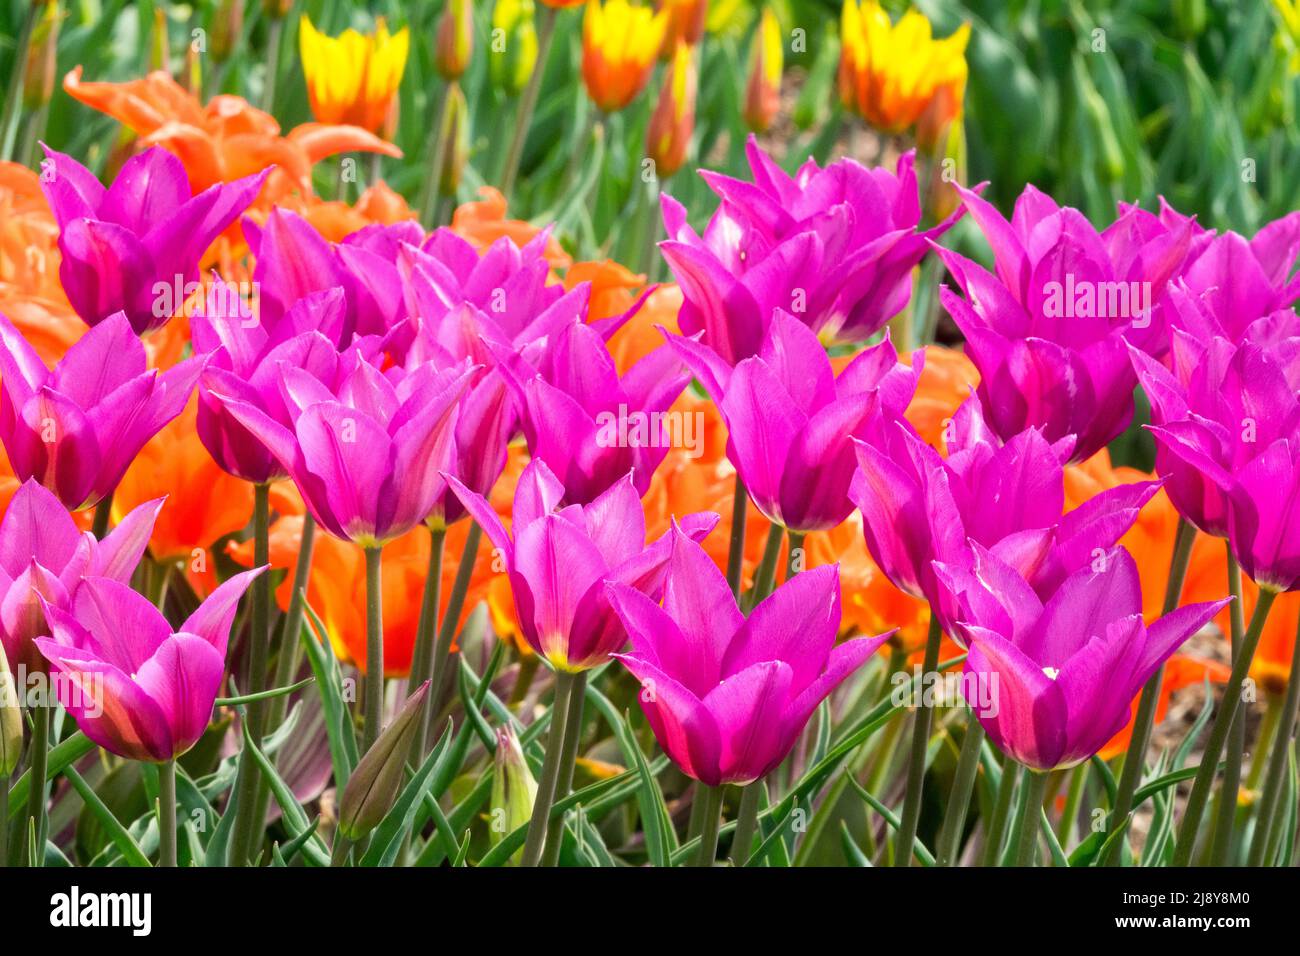 Tulipes 'Purple Dream', Lily Group, tulipes violet Violet couleurs, magnifiques tulipes dans les parterres de fleurs du jardin Banque D'Images